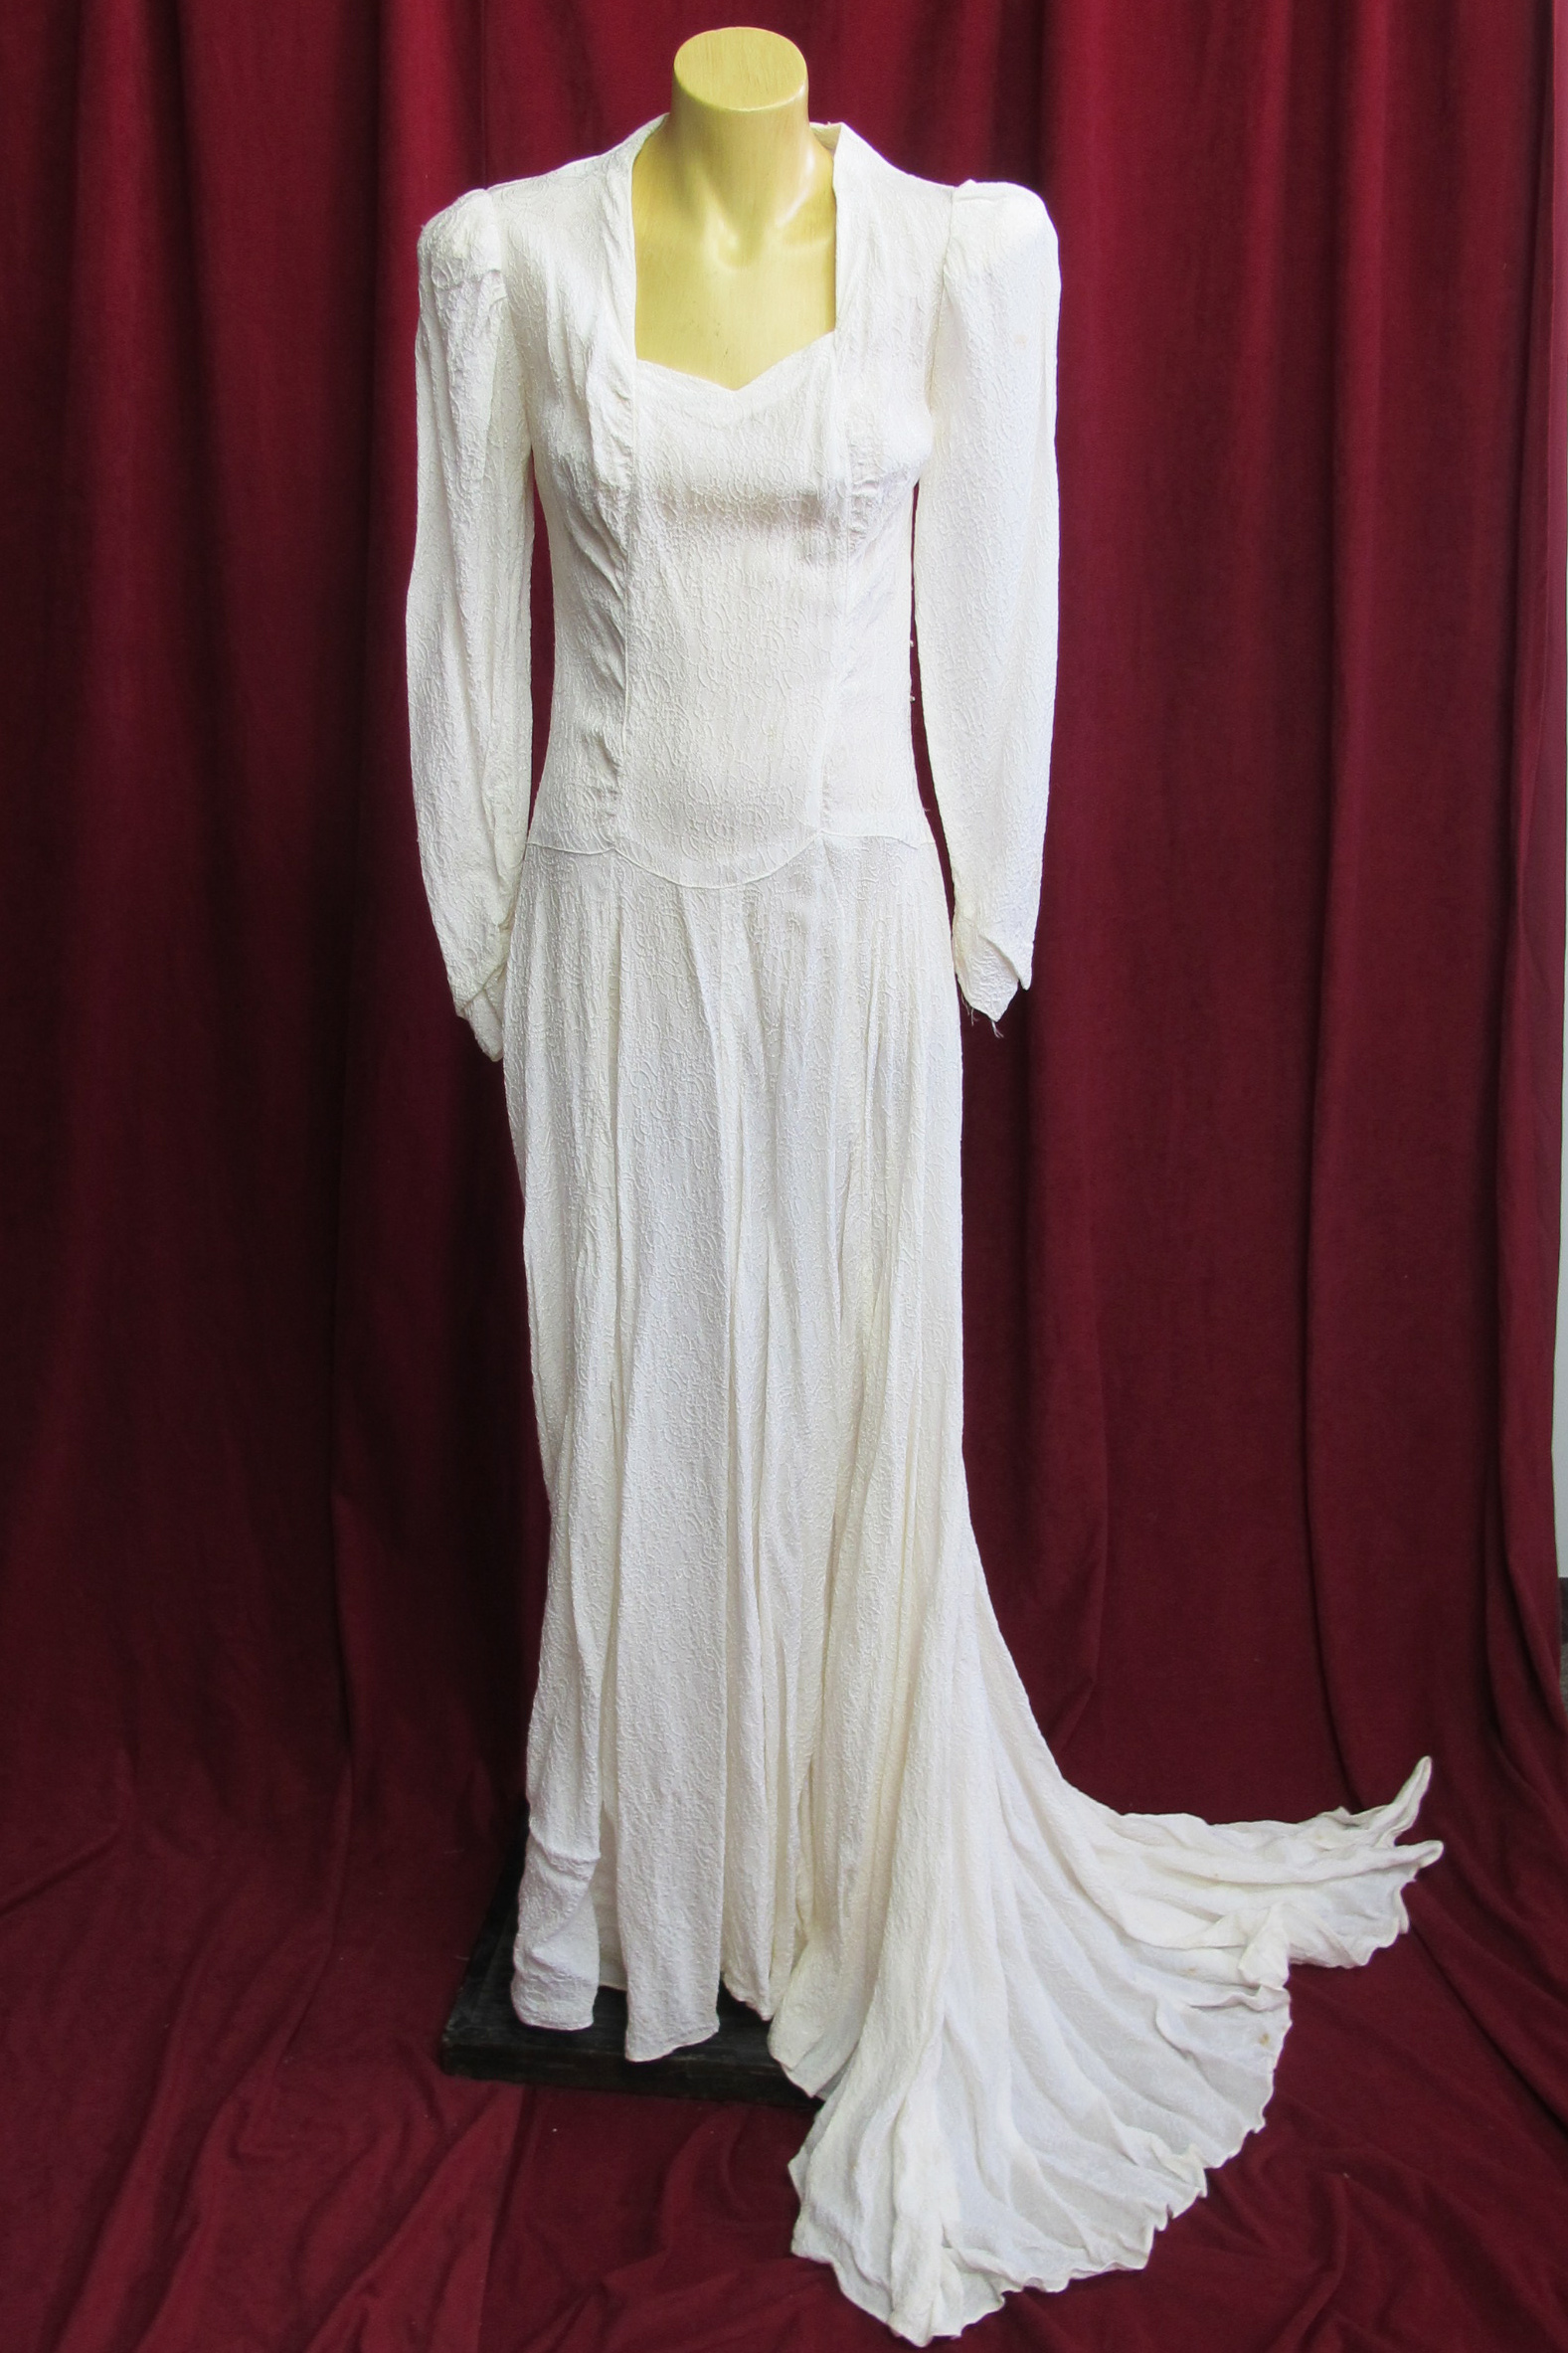 Wedding Dress 1940s Style sz. 8-10 45320358